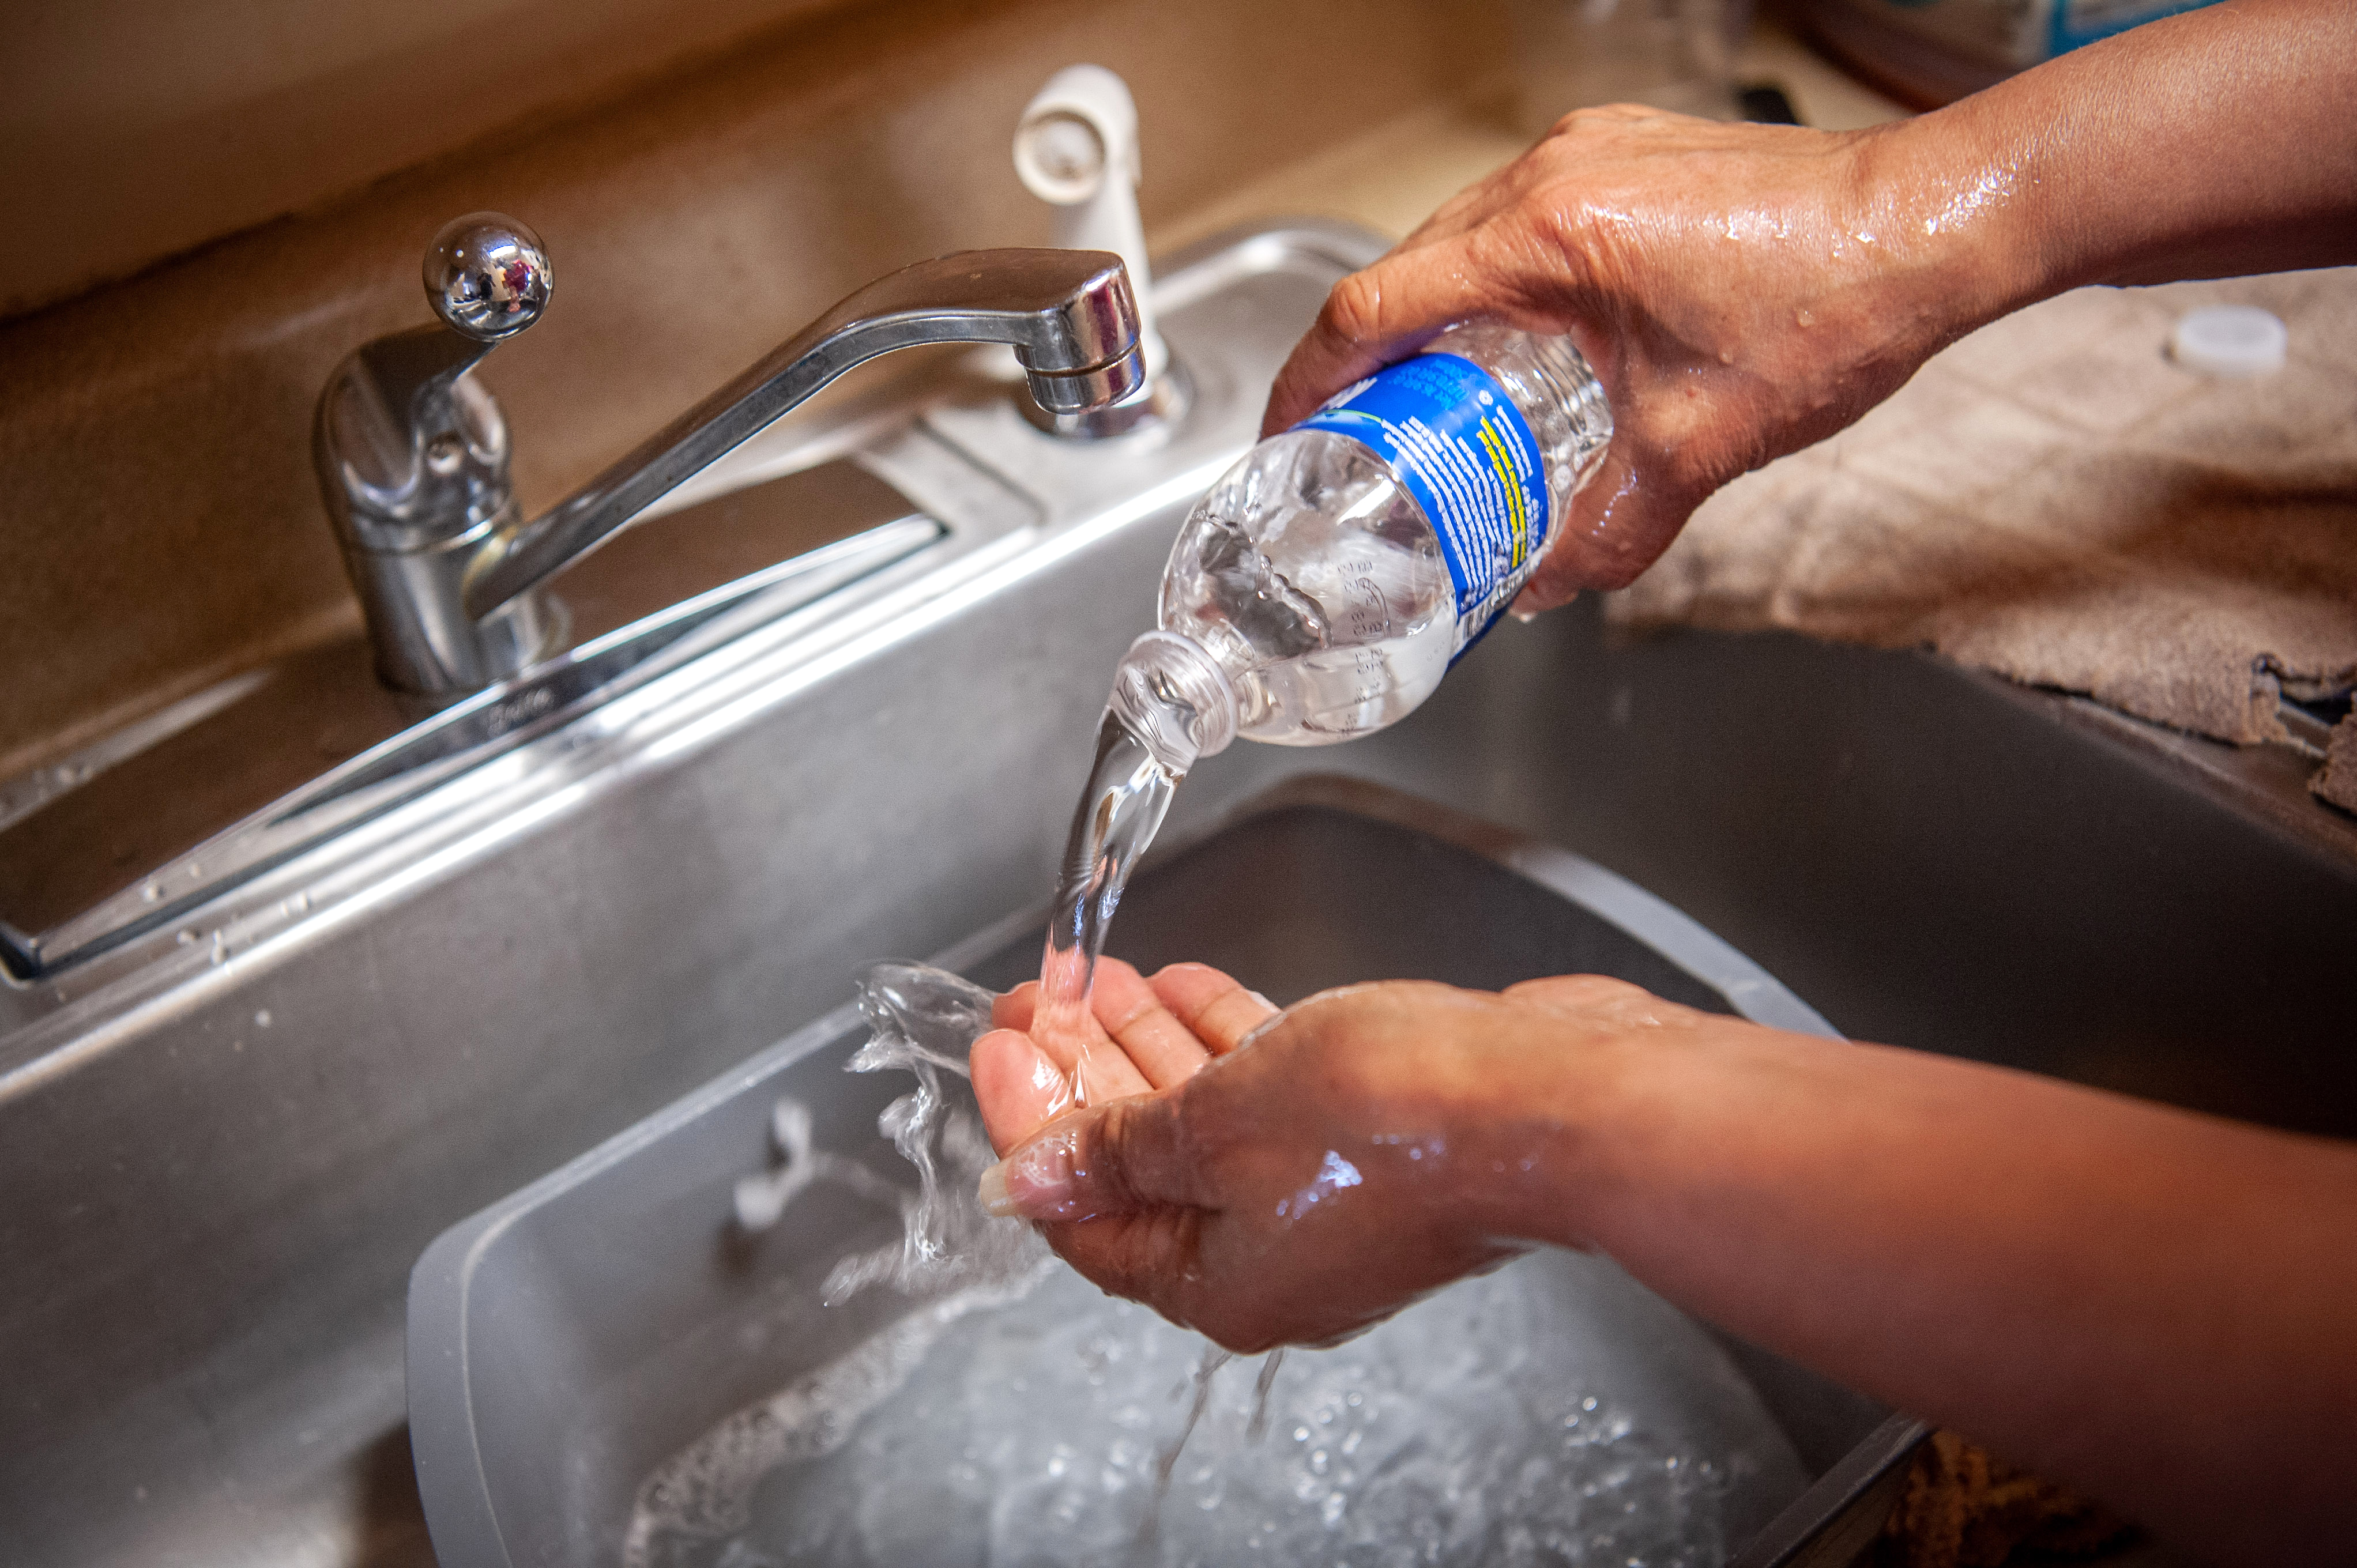 Una residente de Jackson, Misisipi, se lava las manos con agua embotellada en el fregadero de la cocina, el 11 de marzo de 2021.